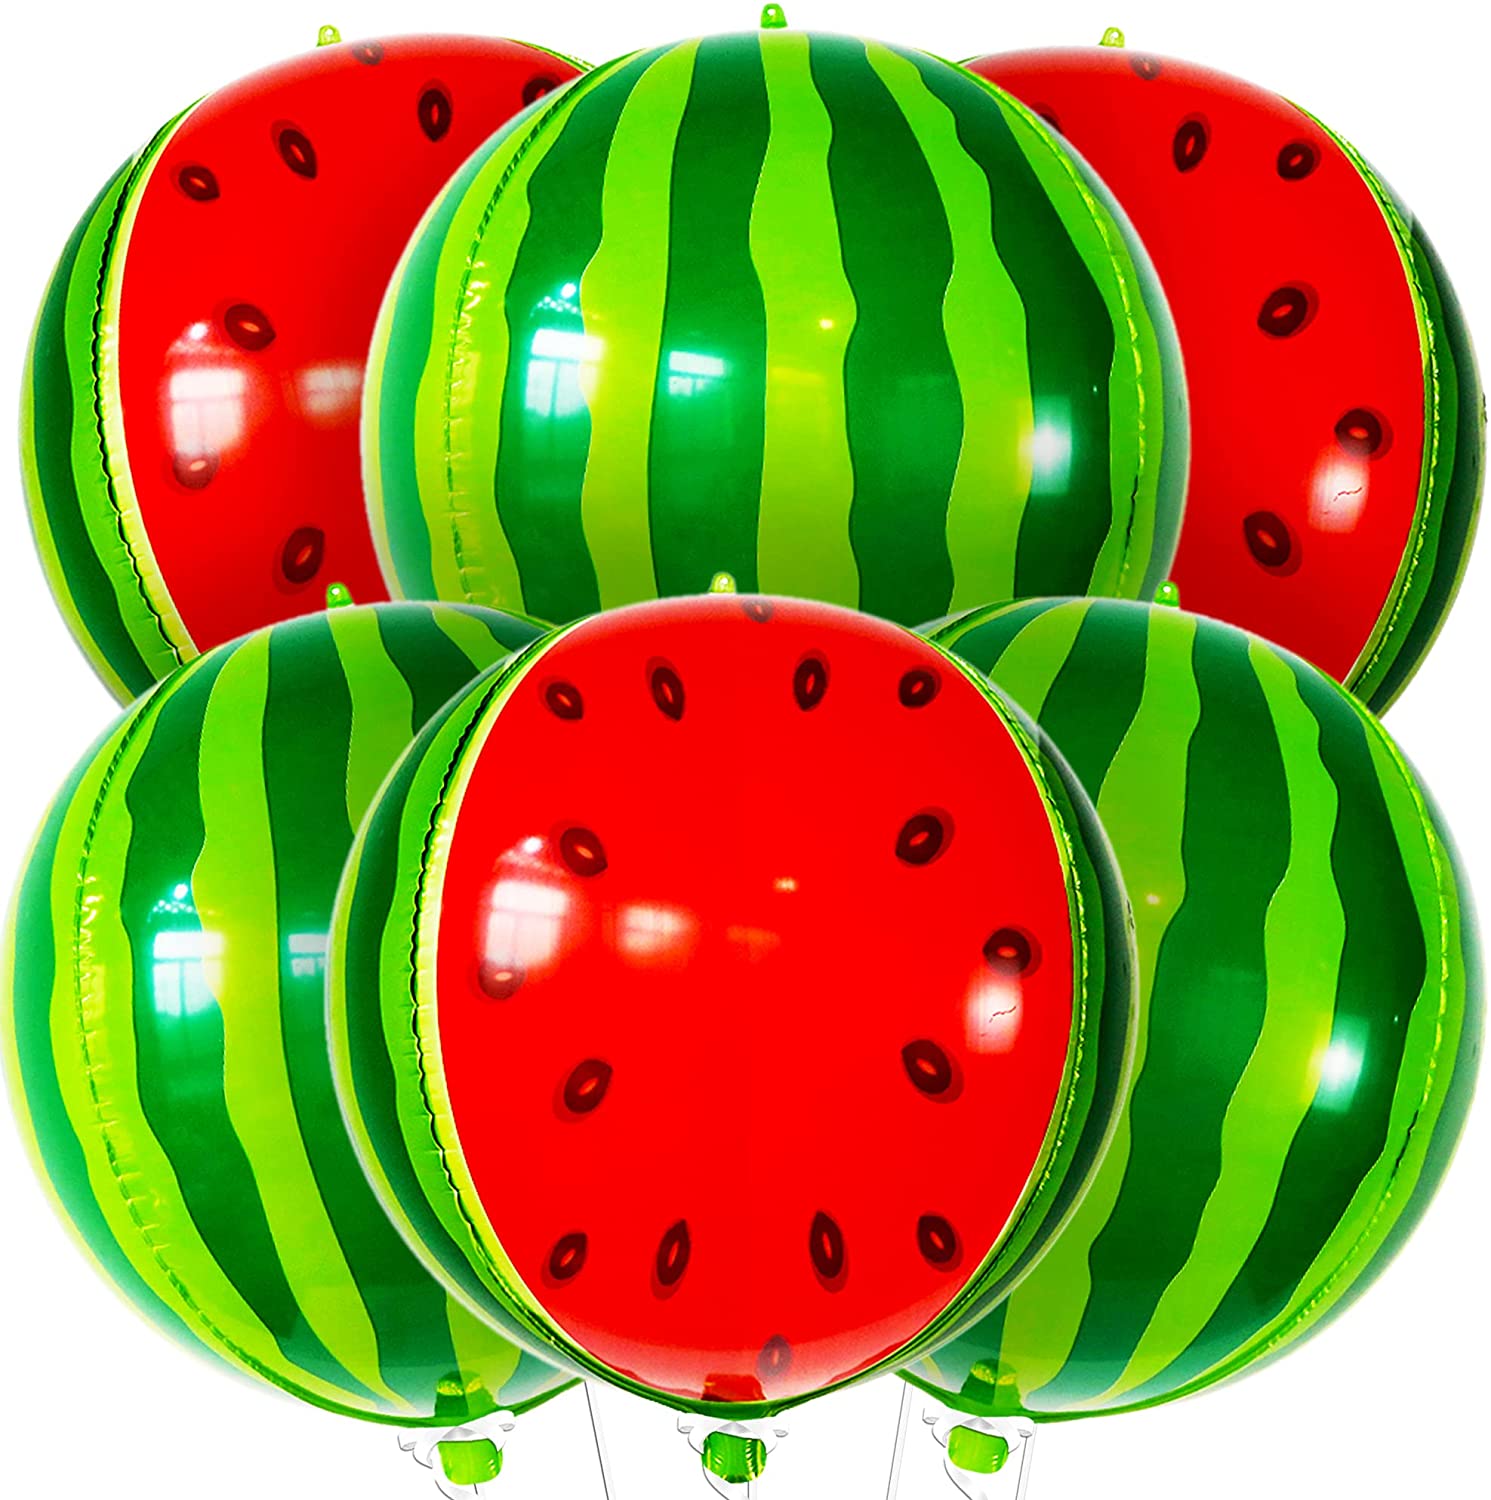 Watermelon Sphere Balloon 55006 - 22 in